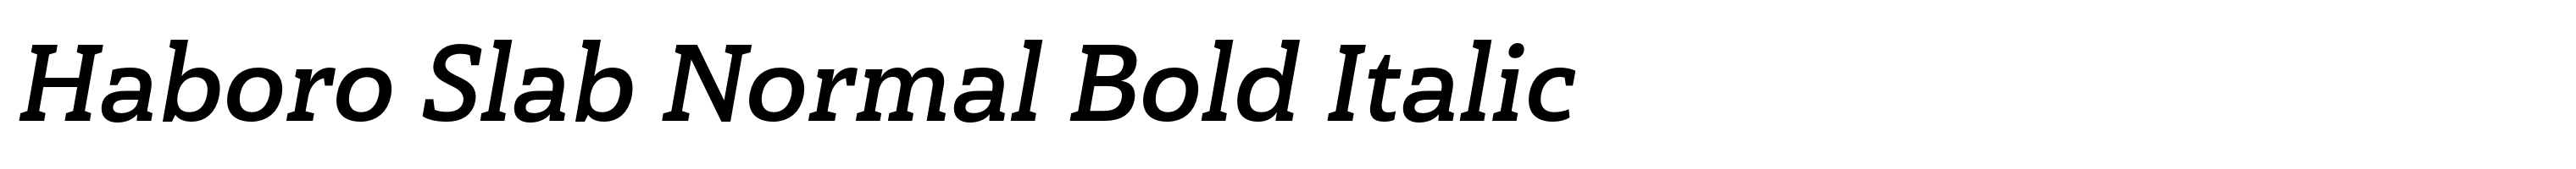 Haboro Slab Normal Bold Italic